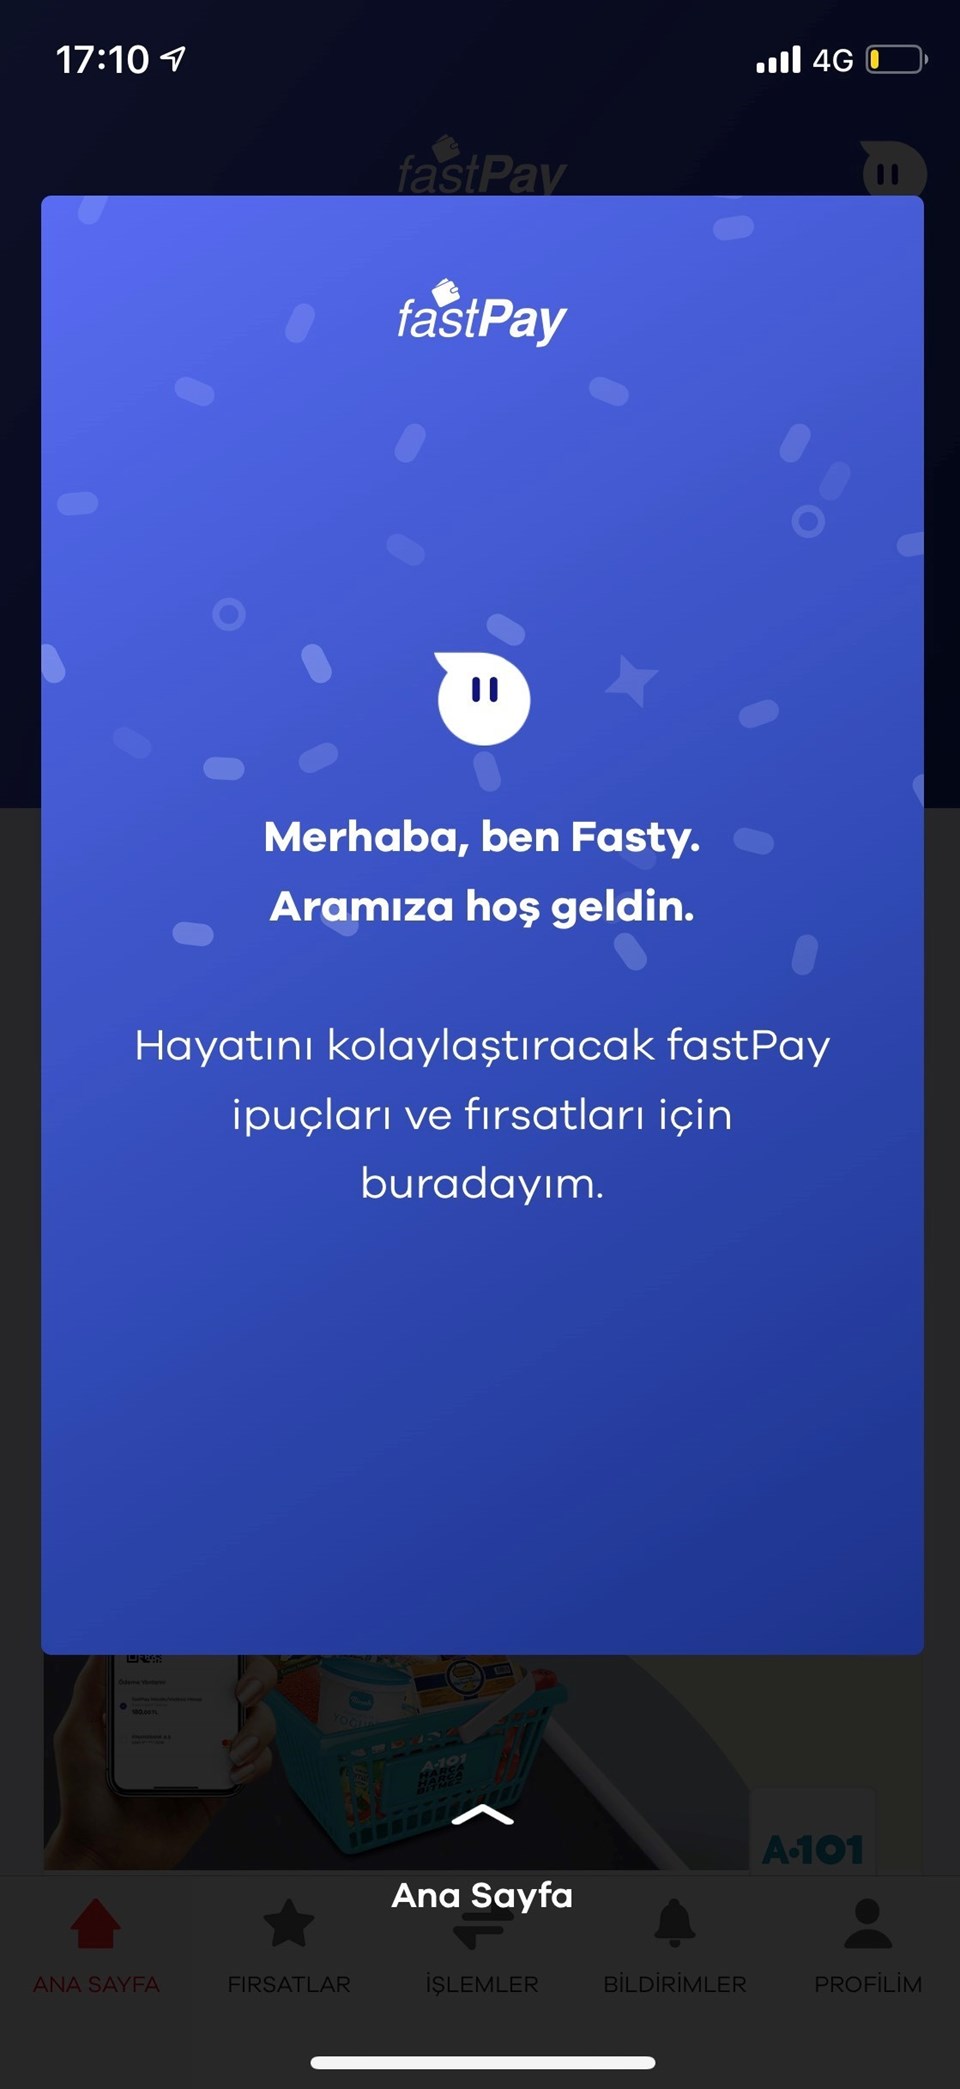 fastPay yeni tasarımı ile vitrinde - 2